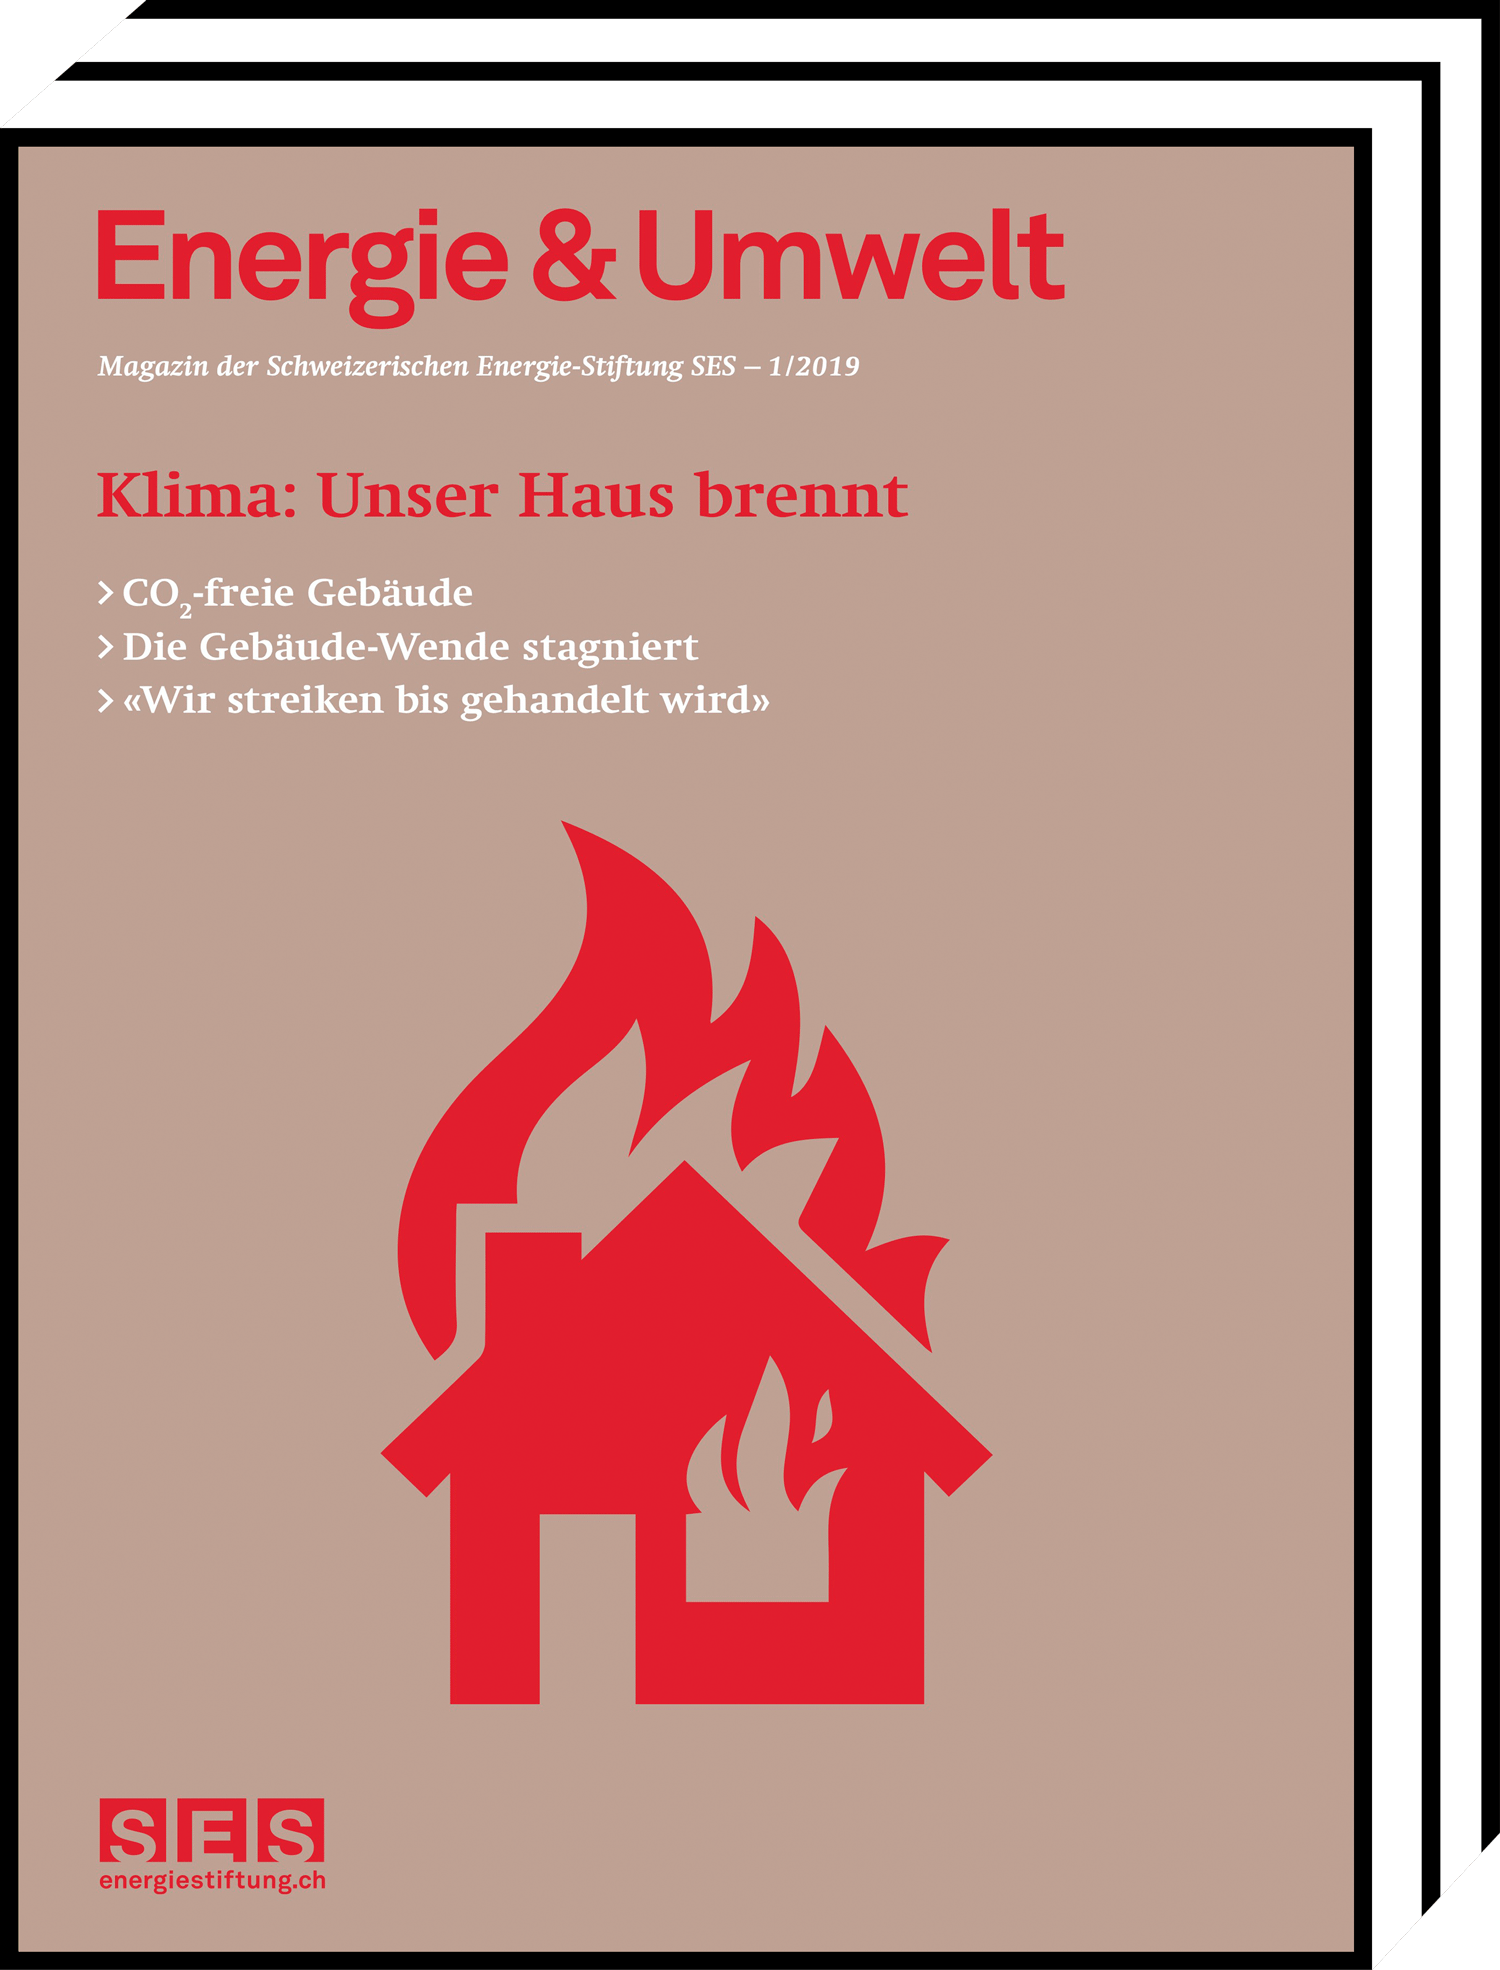 Energie und Umwelt - Unser Haus brennt